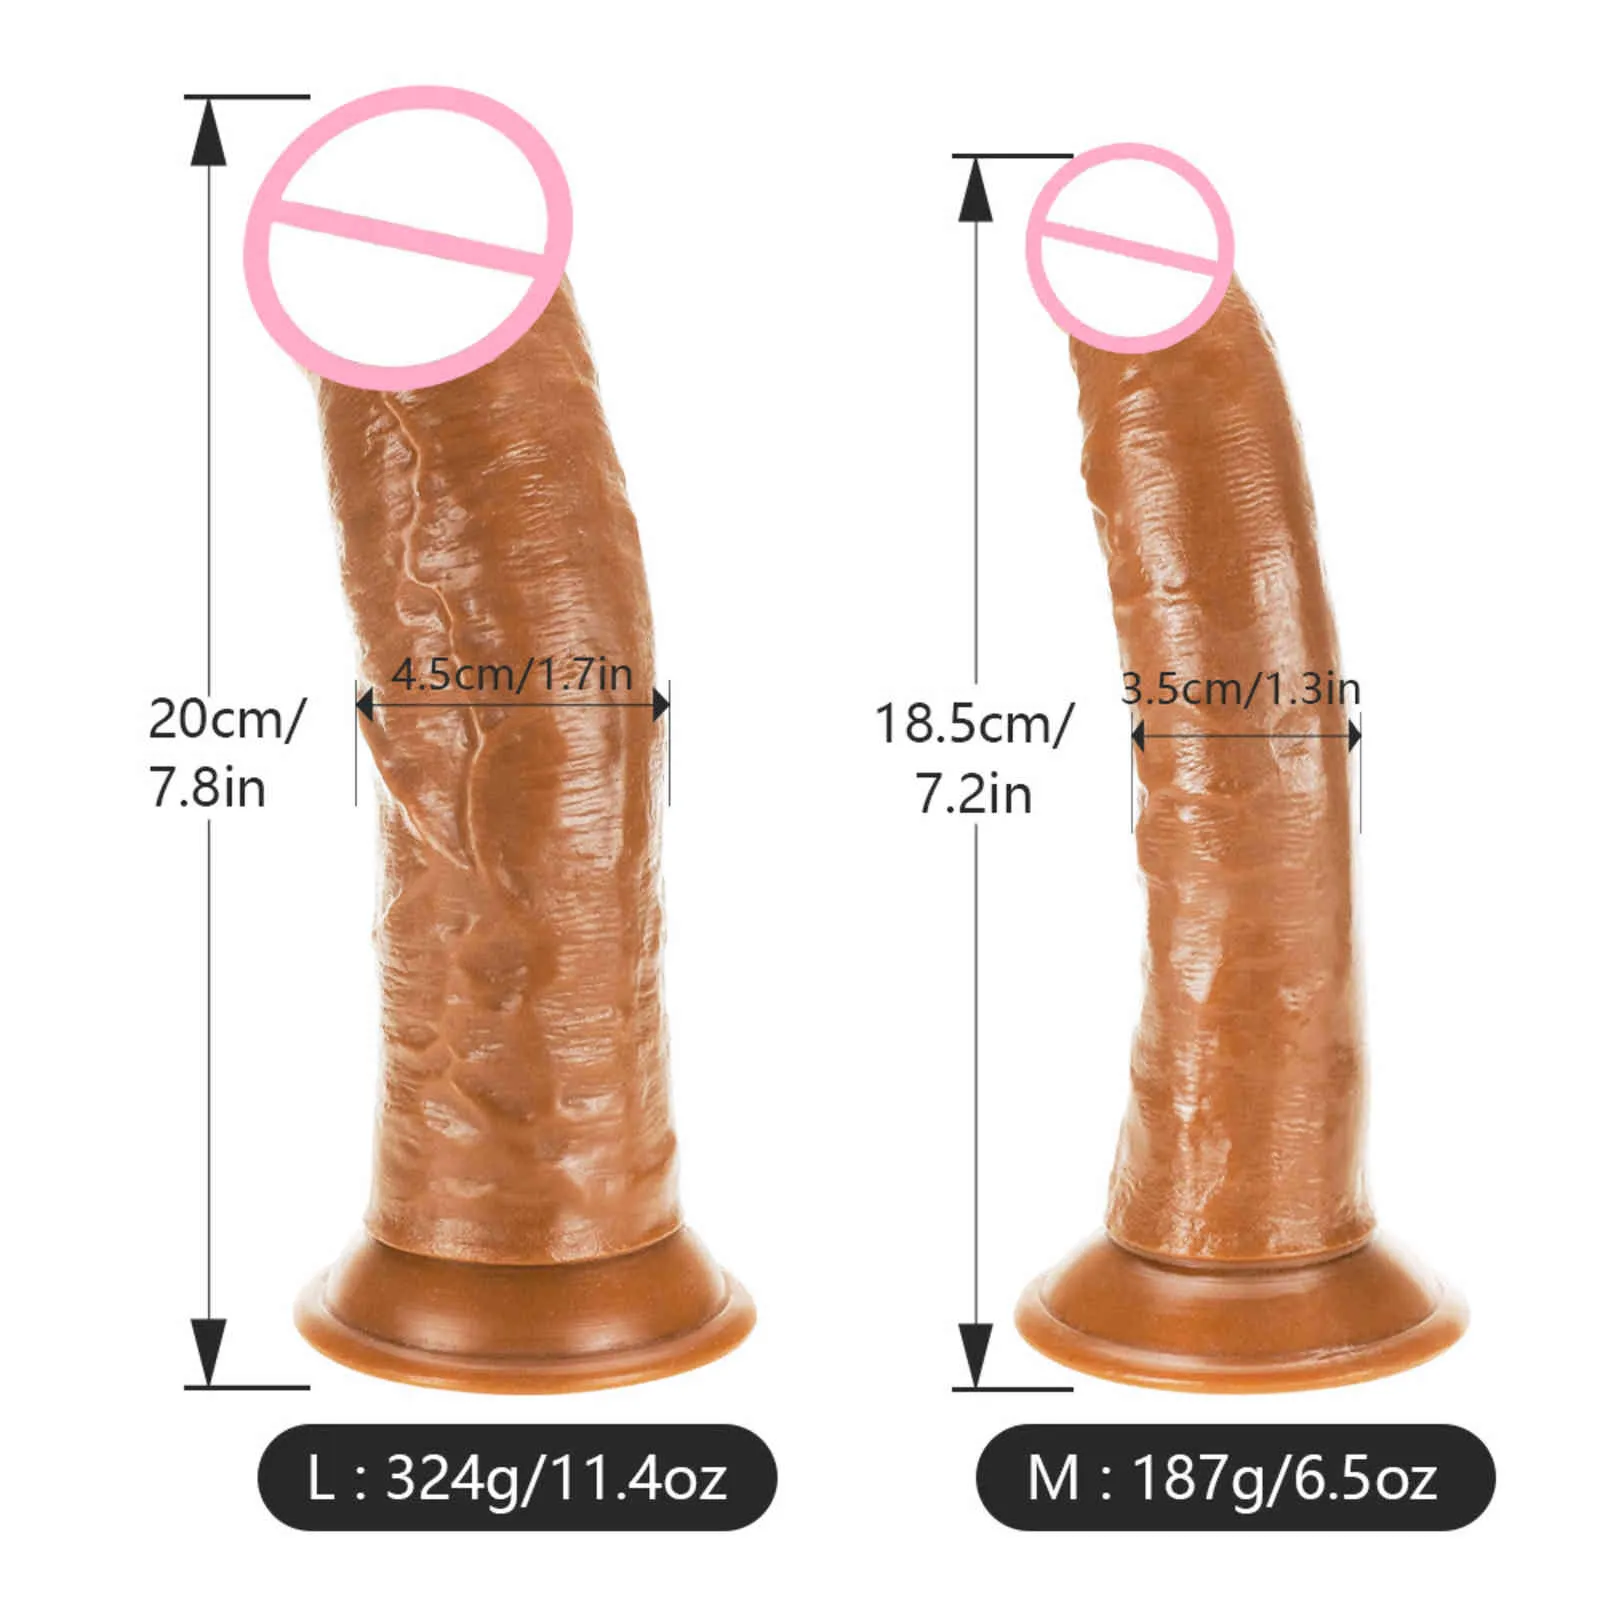 Strapon Realistic Dildo le donne Skin Senno enormi masturbatori del pene Dildos Dildos Belt Aspirazione Clitoride Stimolazione Sex Toys5086319